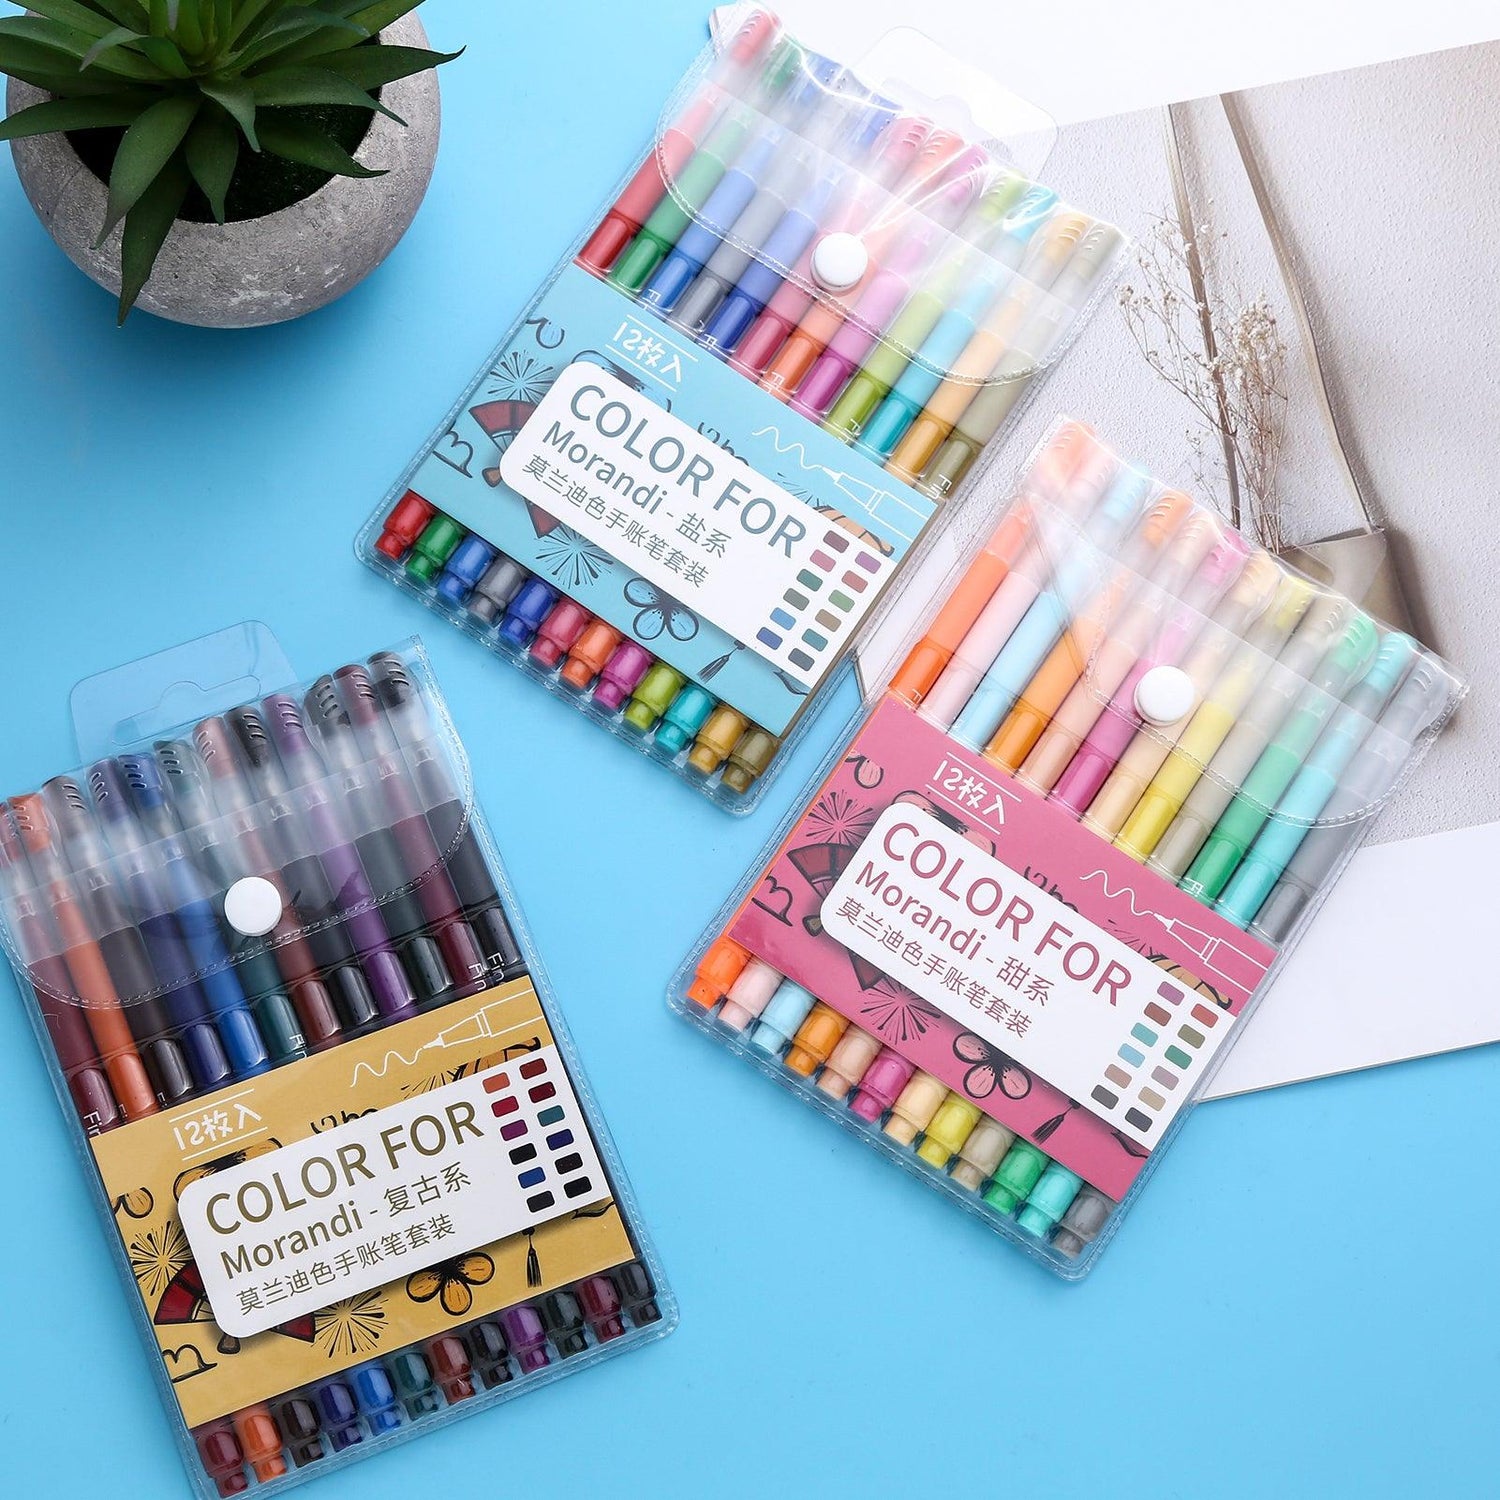 Felt Tip Pen Sets - Felt Tip Pen Set - Color for Morandi -